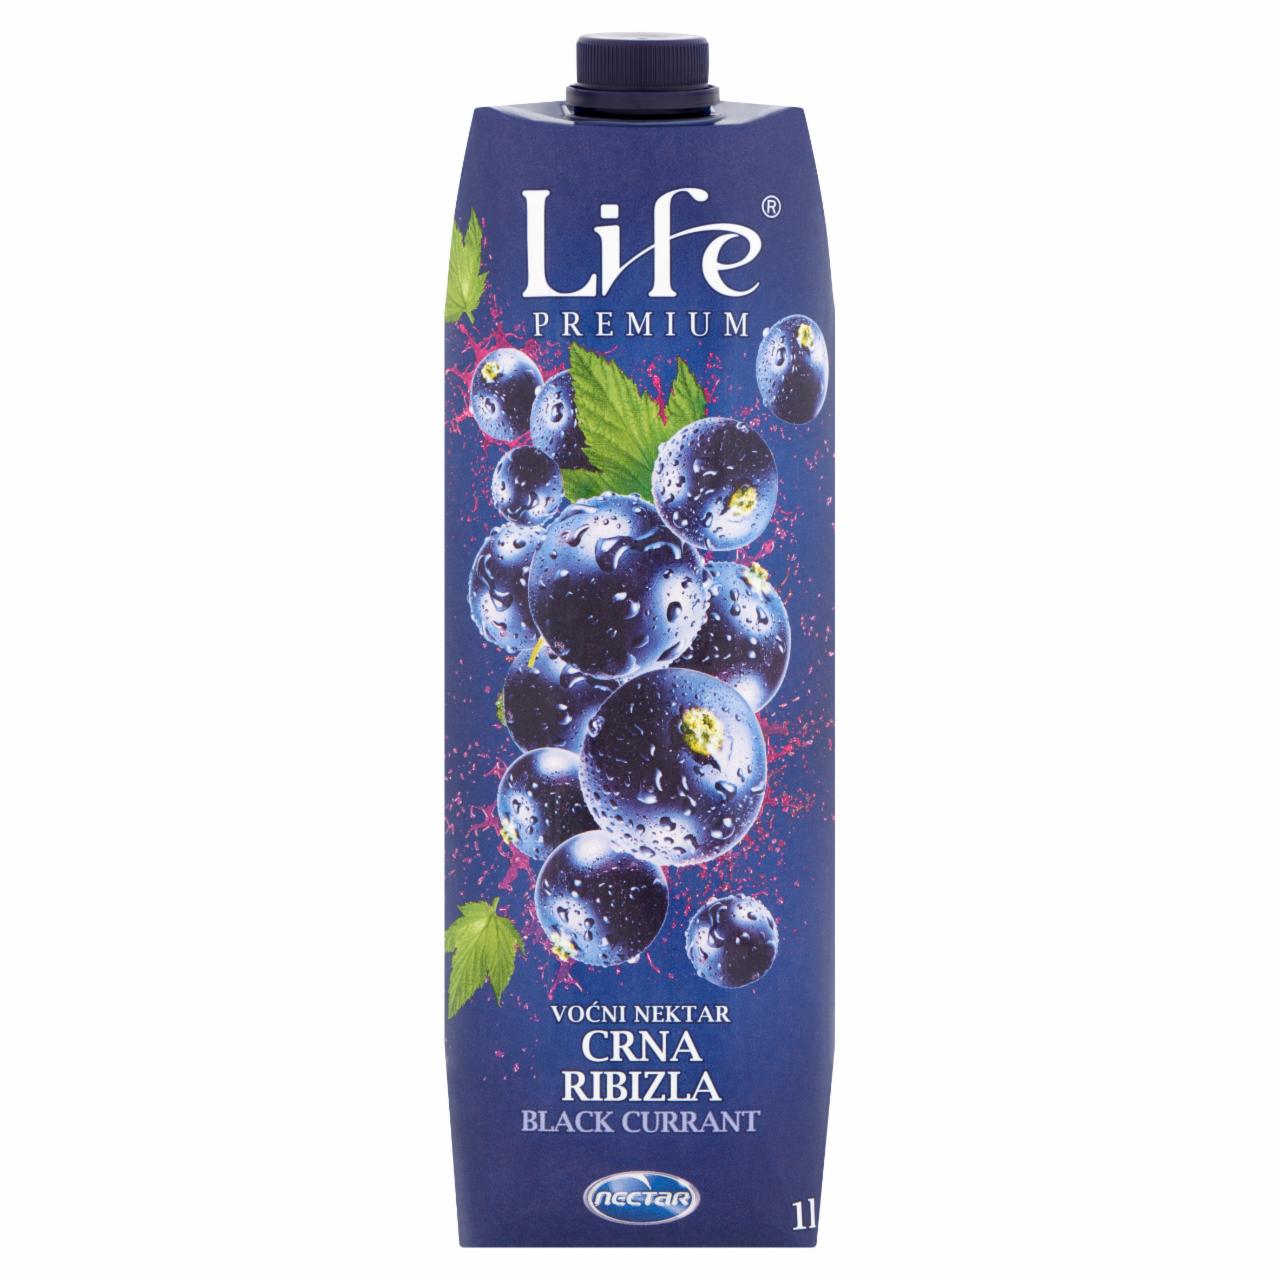 Képek - Nectar Life prémium feketeribizli szűrt vegyes gyümölcsital 1 l